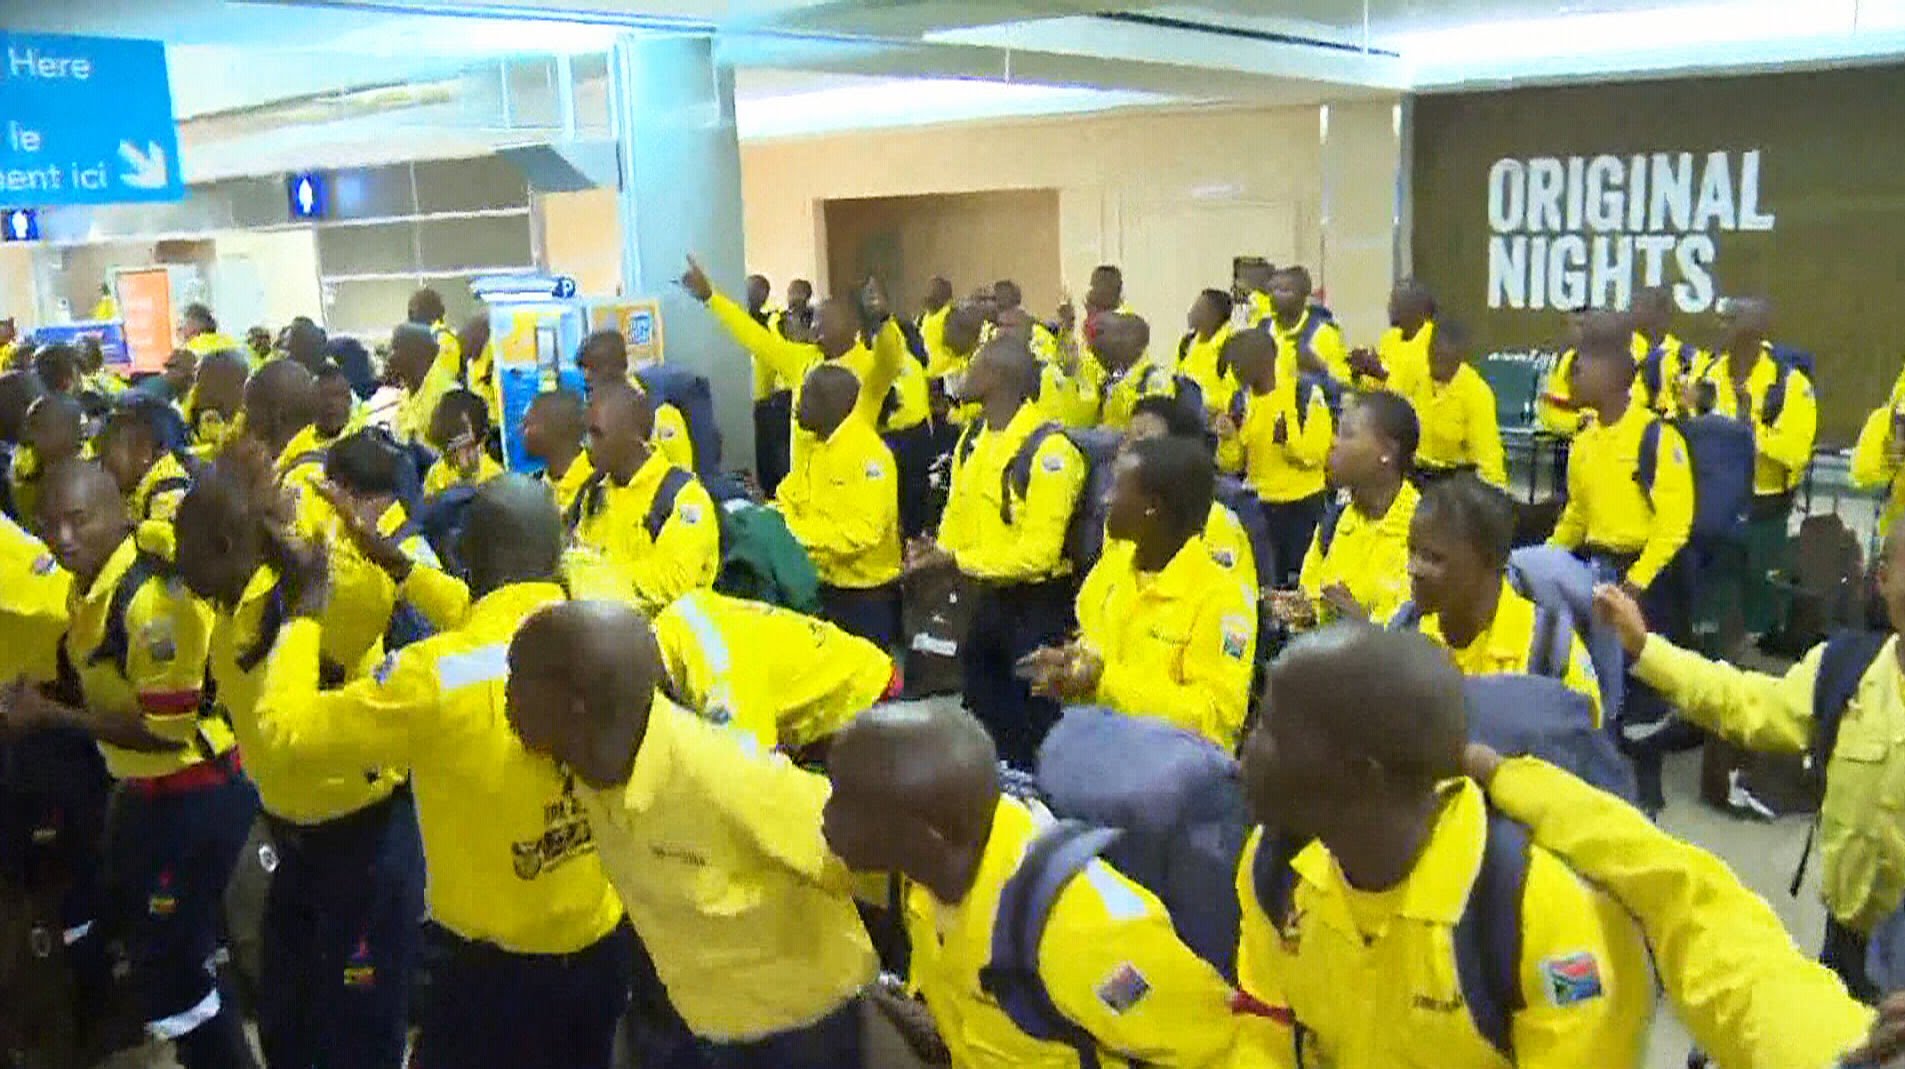 Bombeiros voluntários sul-africanos mostram-se empolgados para ajudar no combate aos incêndios no Canadá